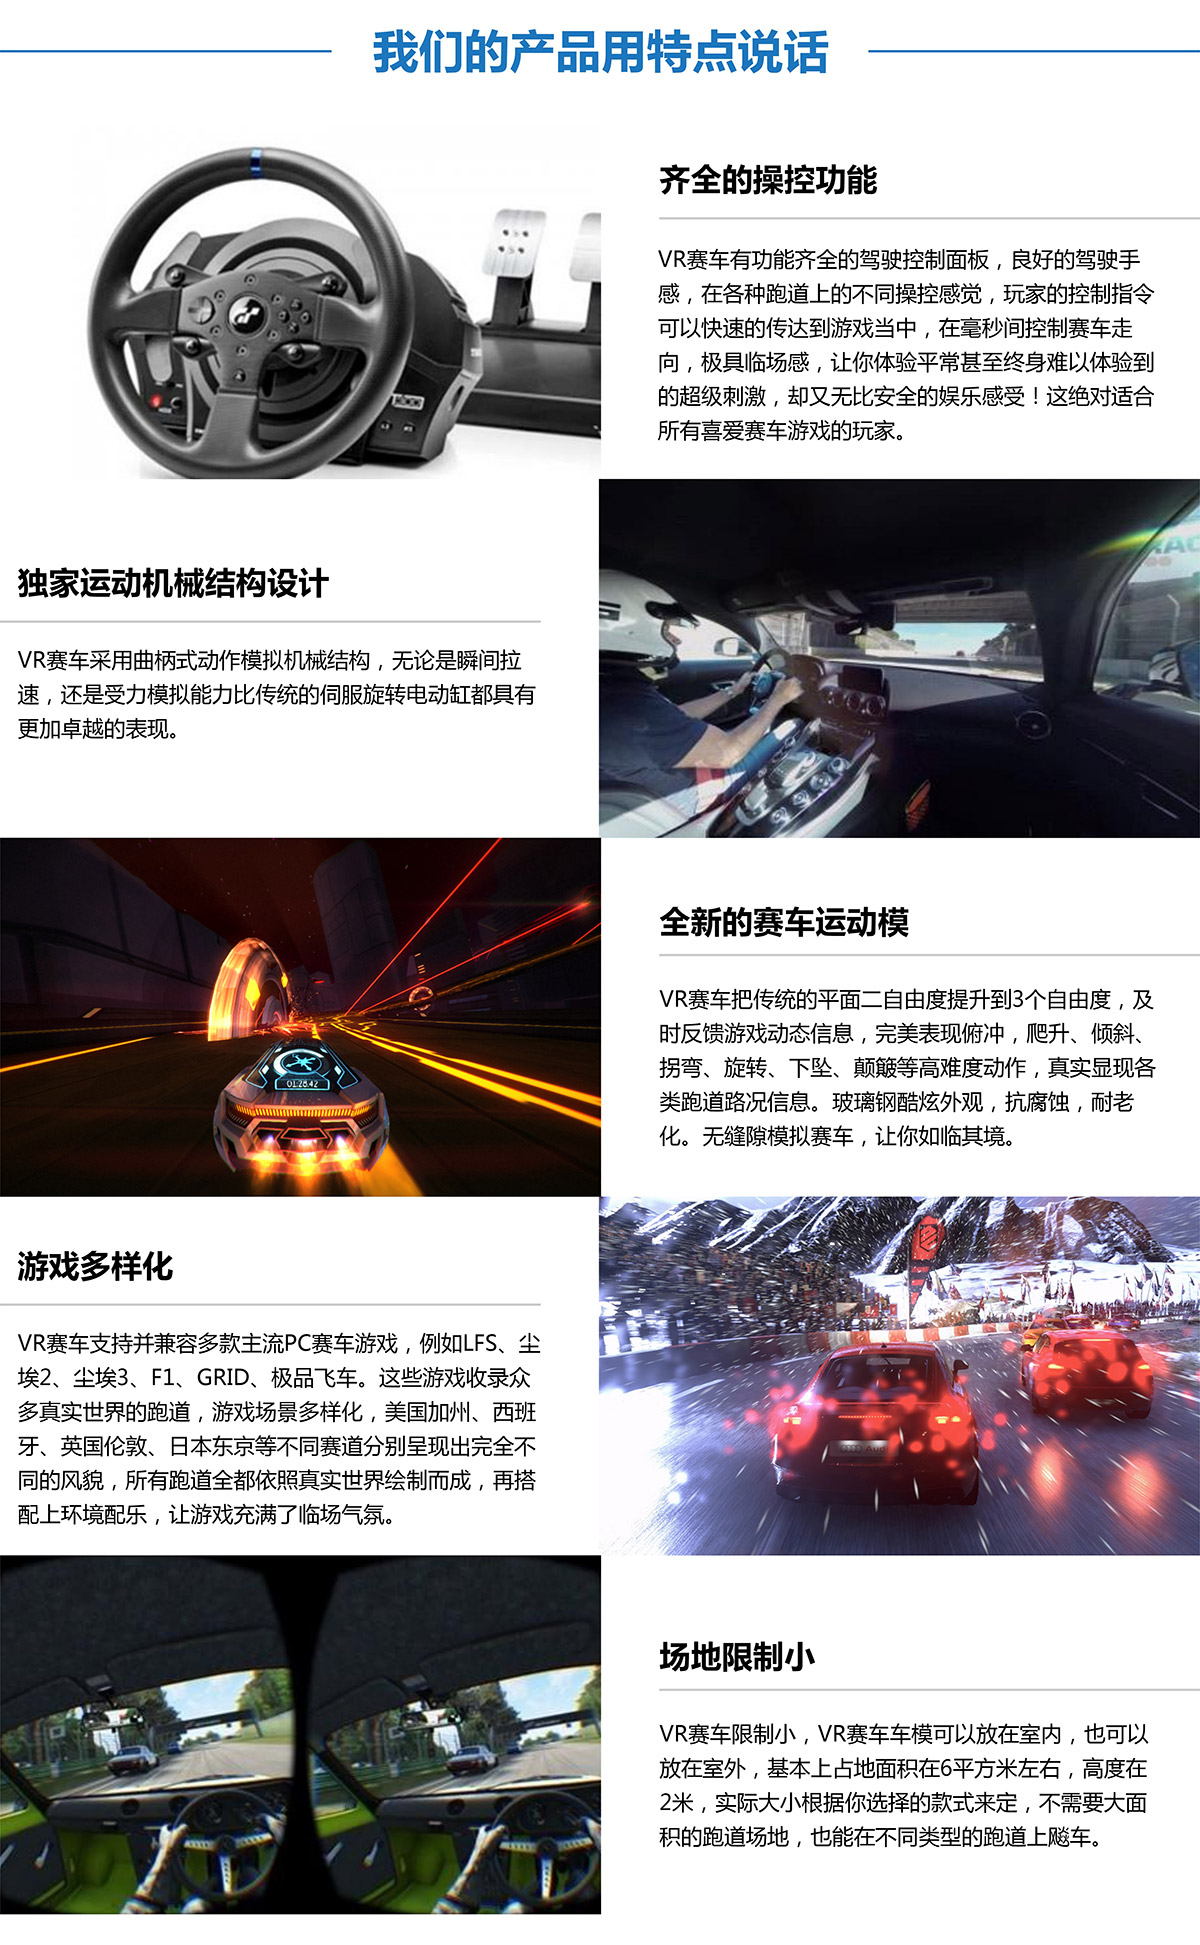 模拟安全虚拟VR赛车产品用特点说话.jpg